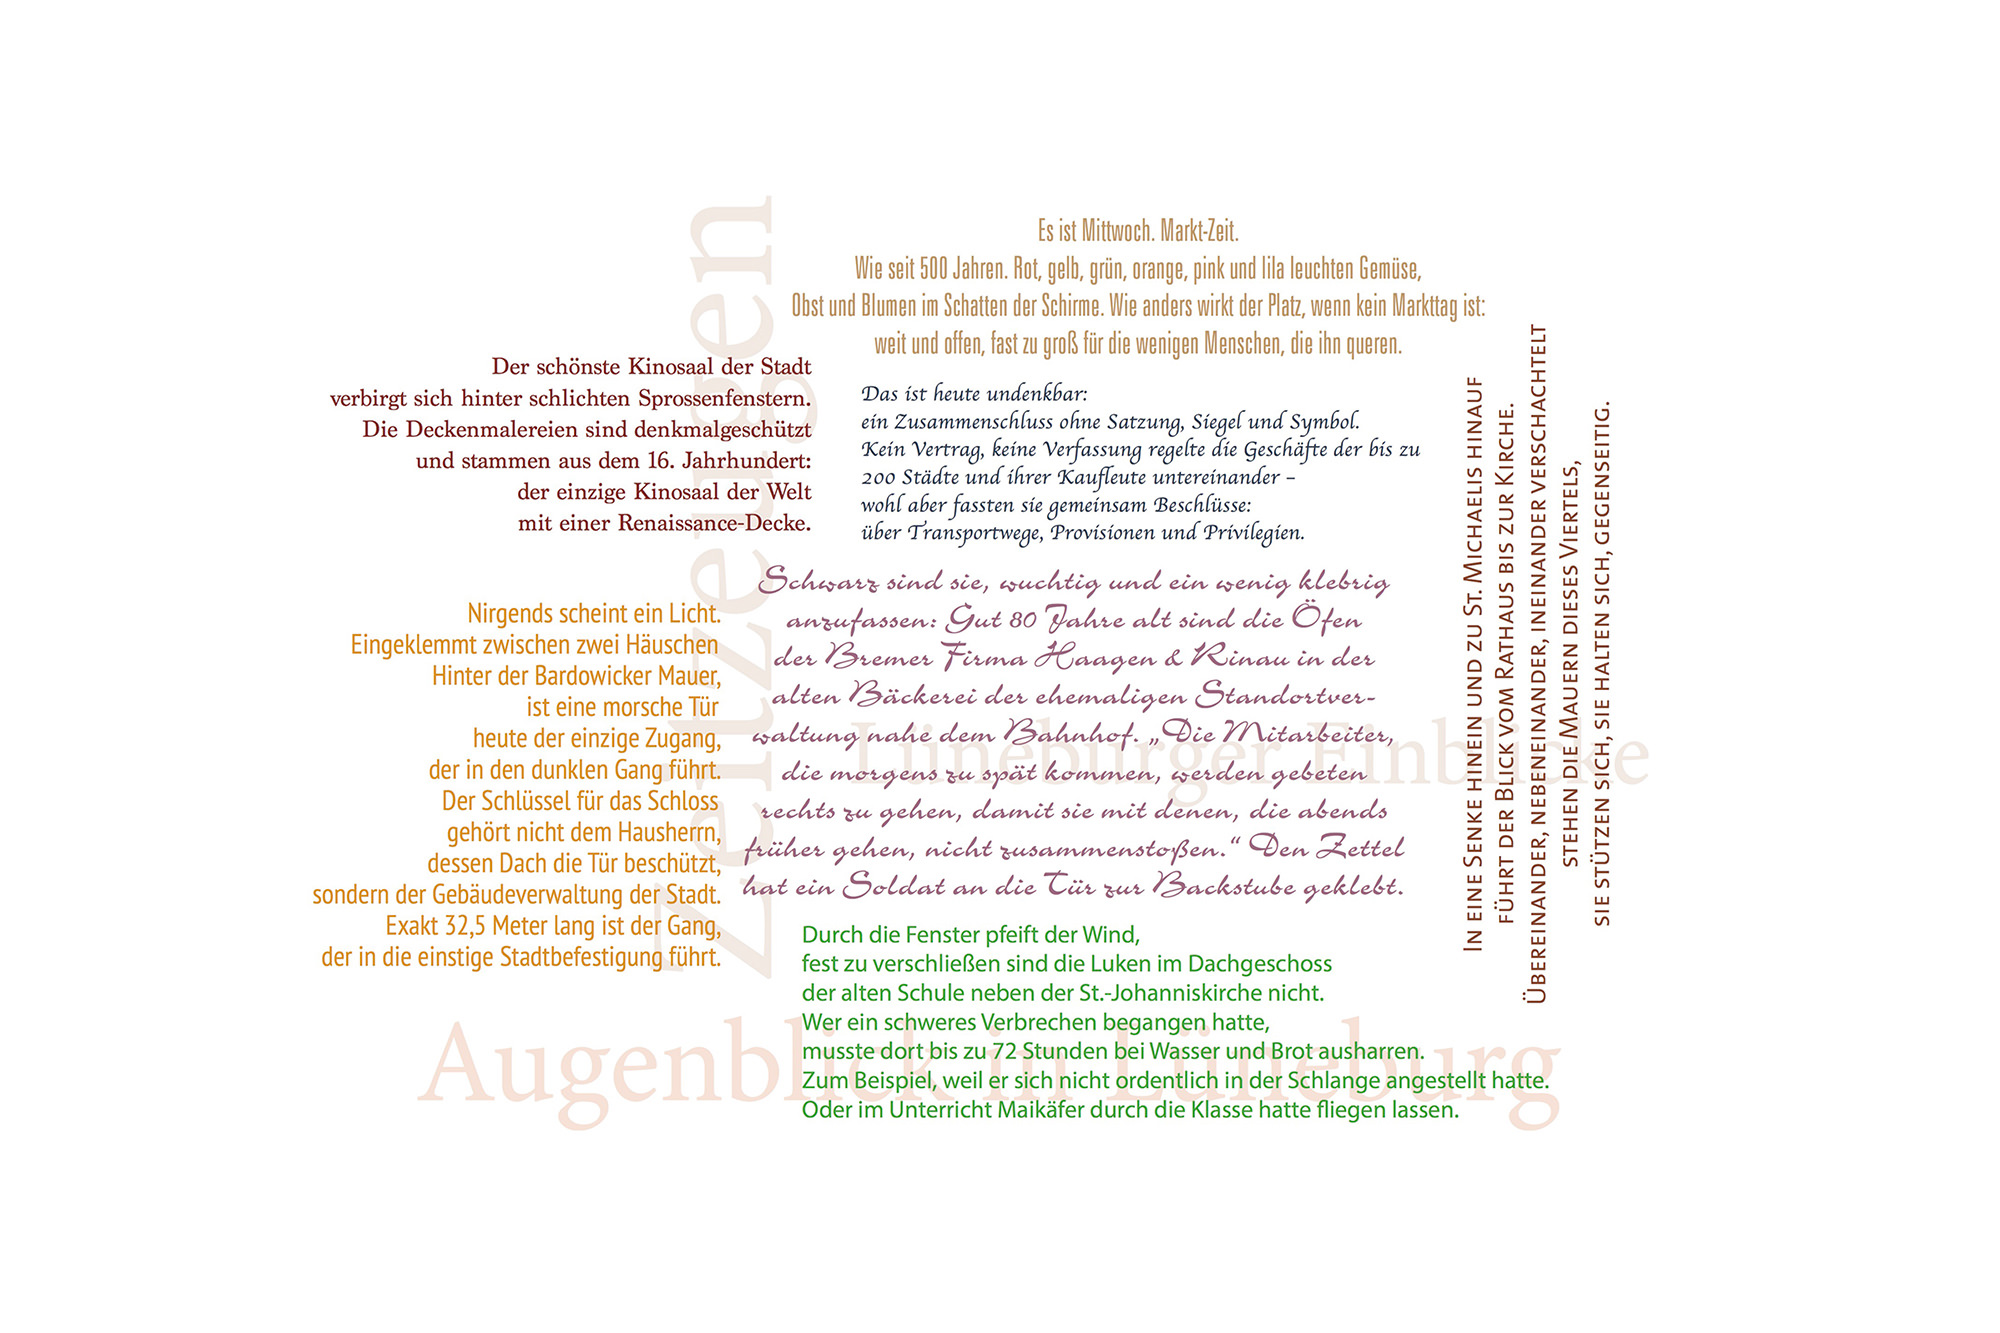 Wortwolke aus Zitaten unserer Lüneburger Bildbände